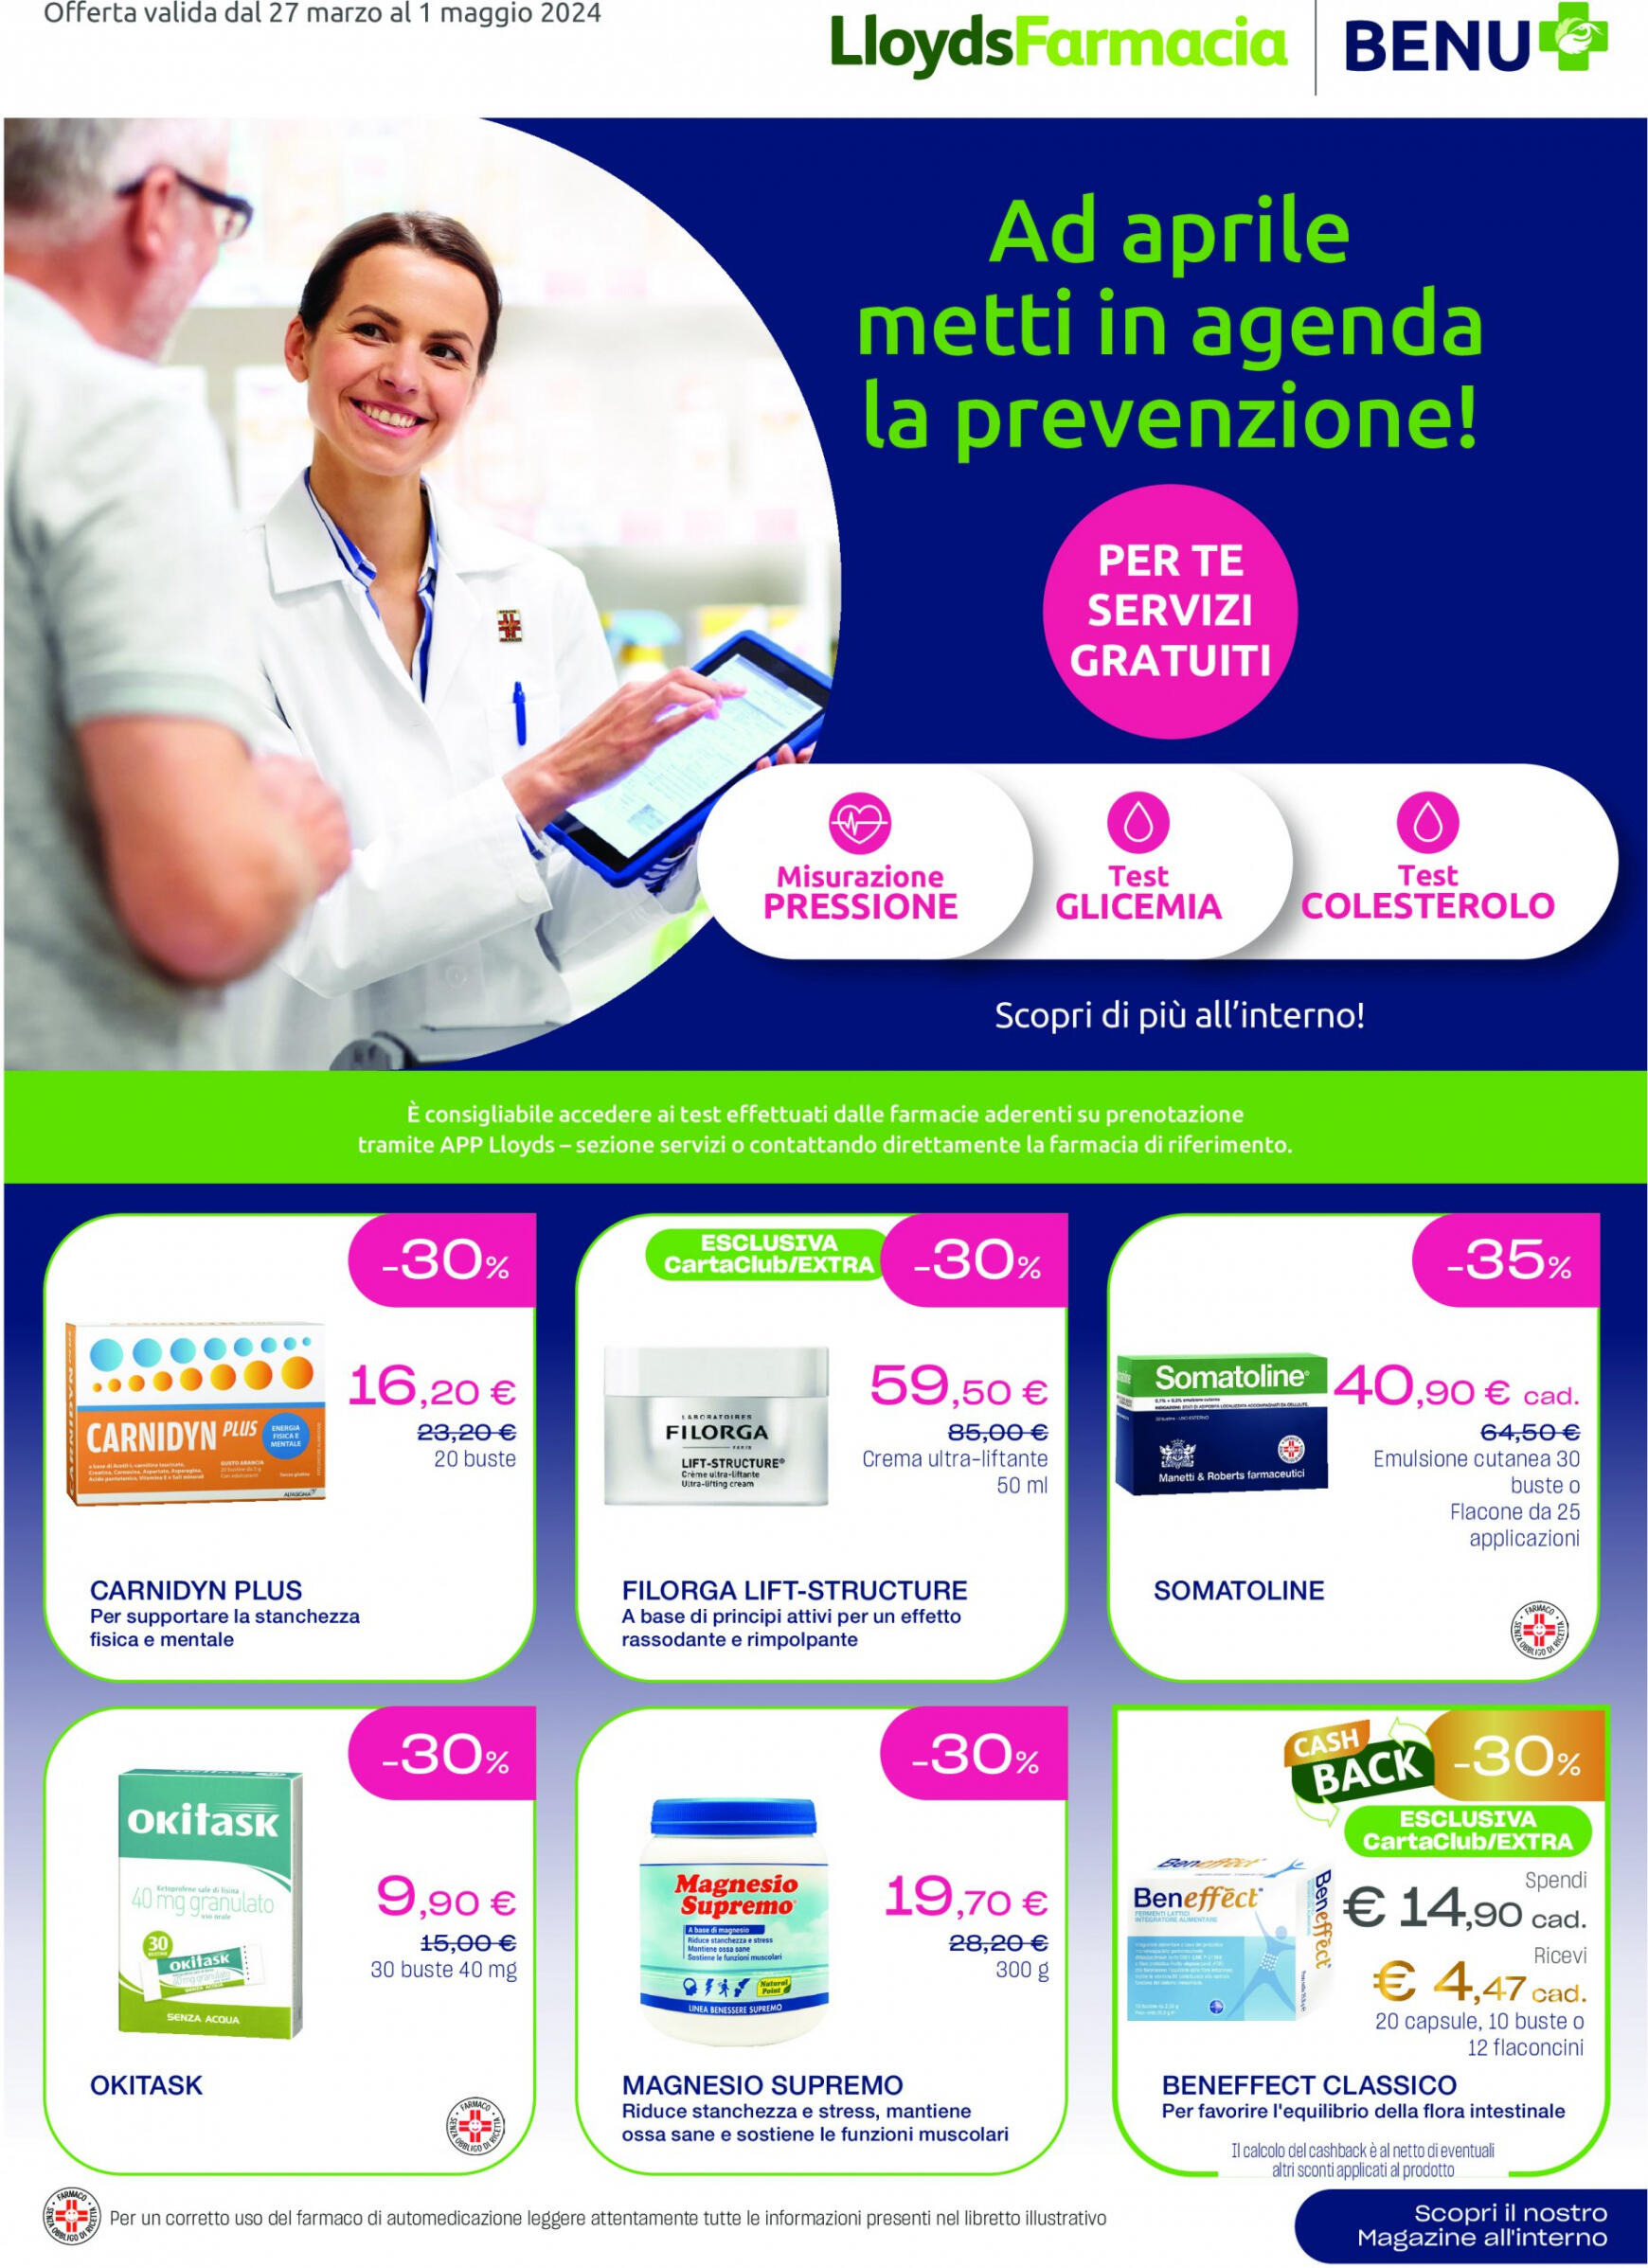 lloyds-farmacia - Nuovo volantino Lloyds Farmacia - Ad aprile metti in agenda la prevenzione! 27.03. - 01.05. - page: 1